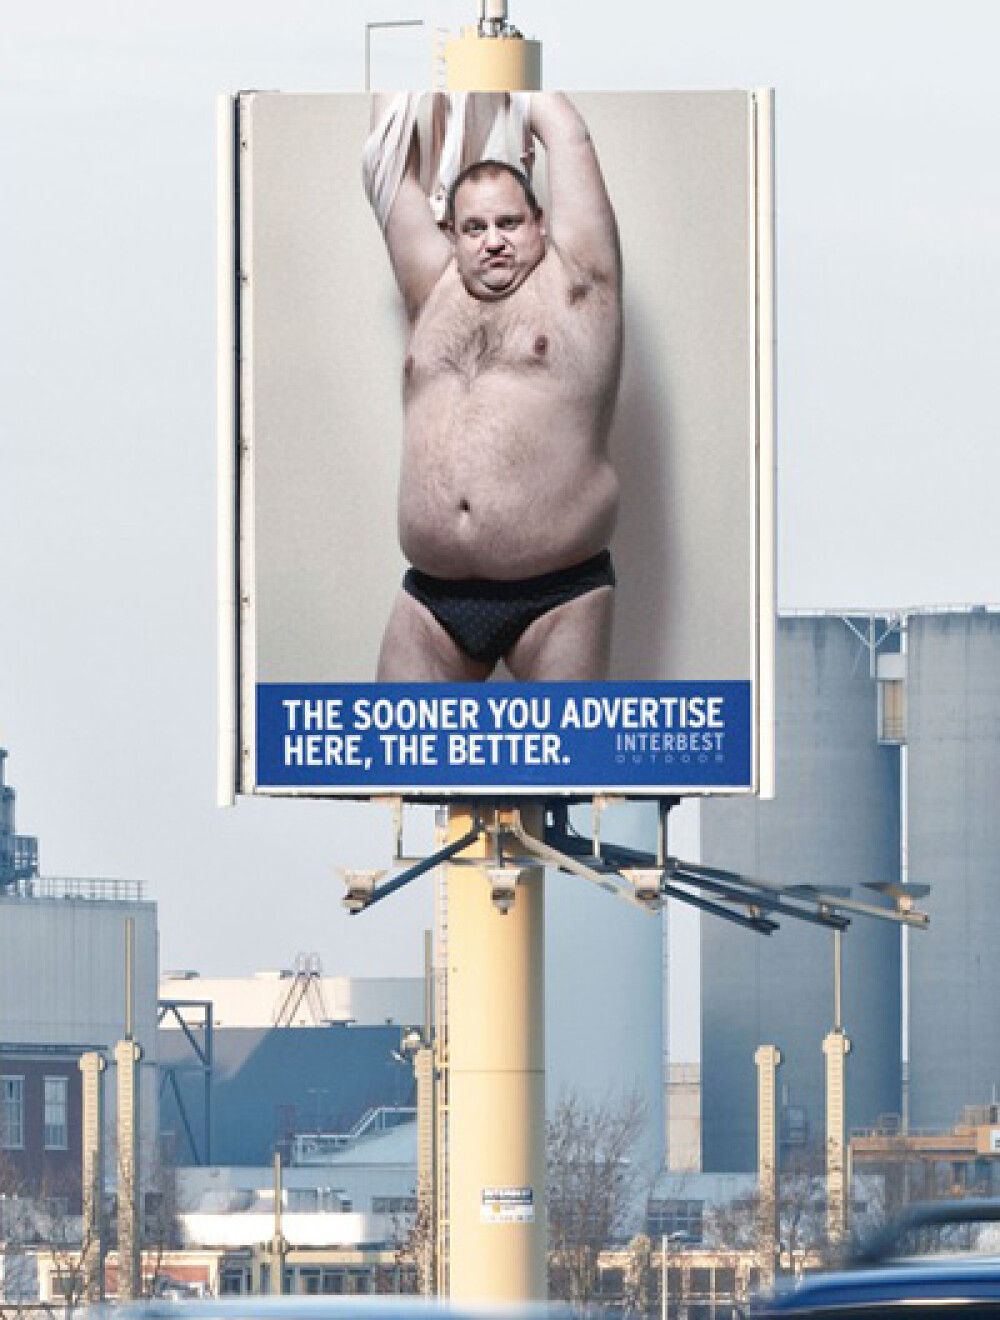 Barbatul stripper de pe stalp - cea mai inspirata campanie a anului - Imaginea 3